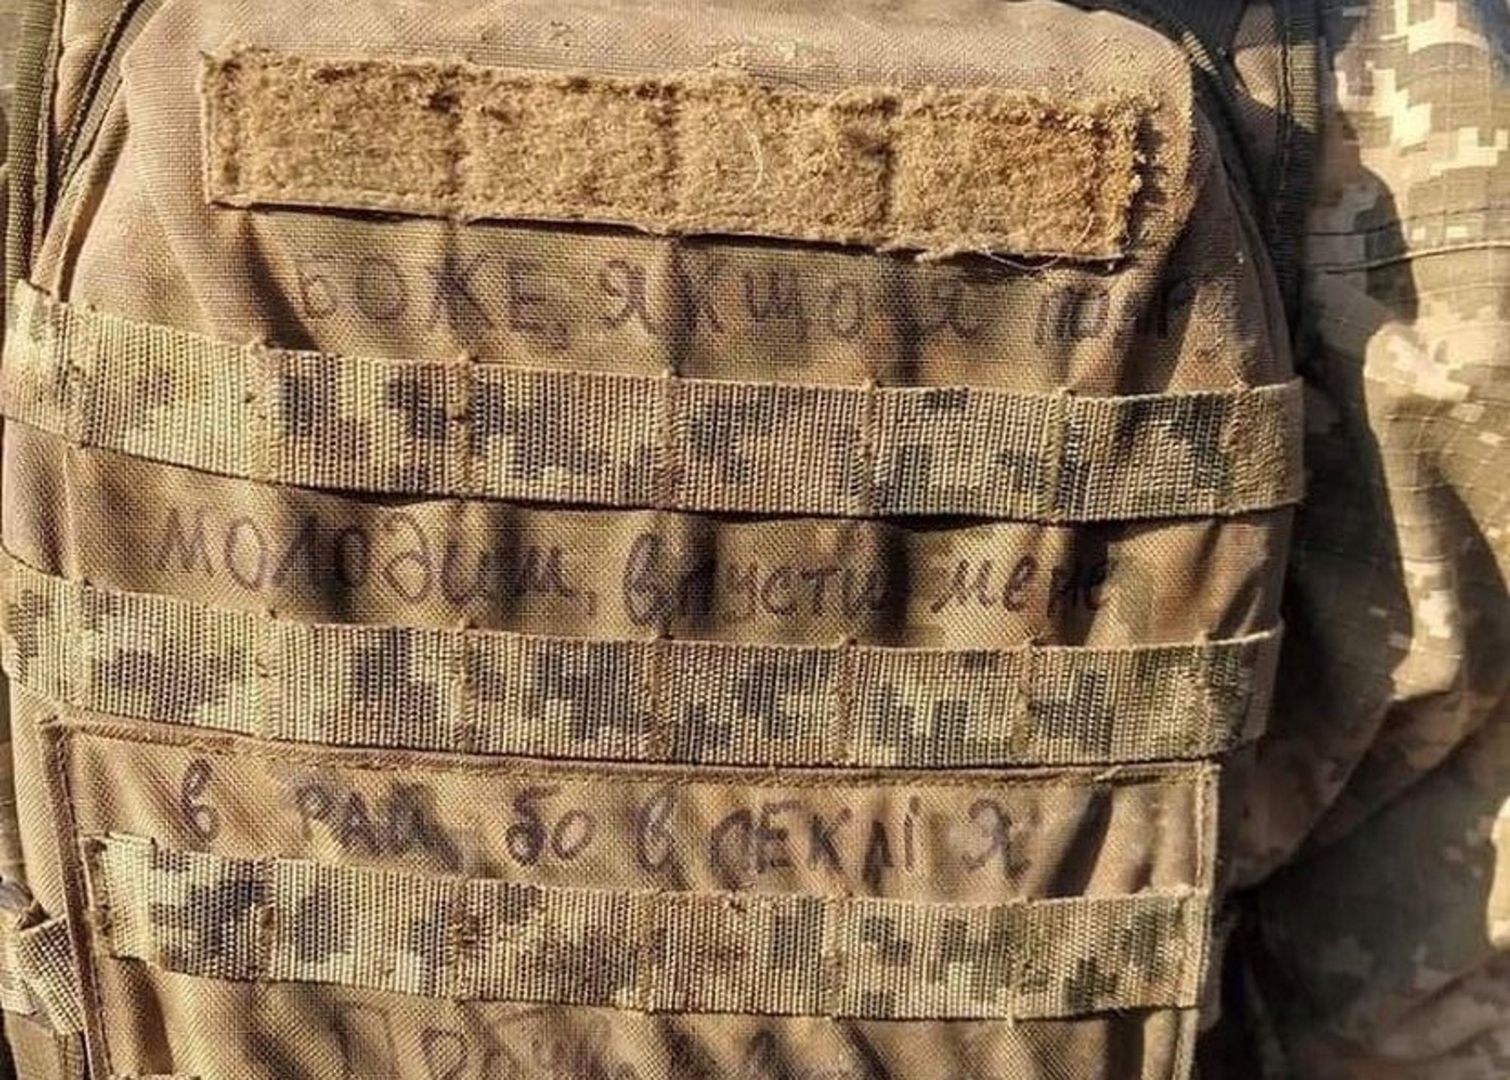 Wiadomość dla Boga. Ukraiński żołnierz wypisał na plecaku słynne zdanie